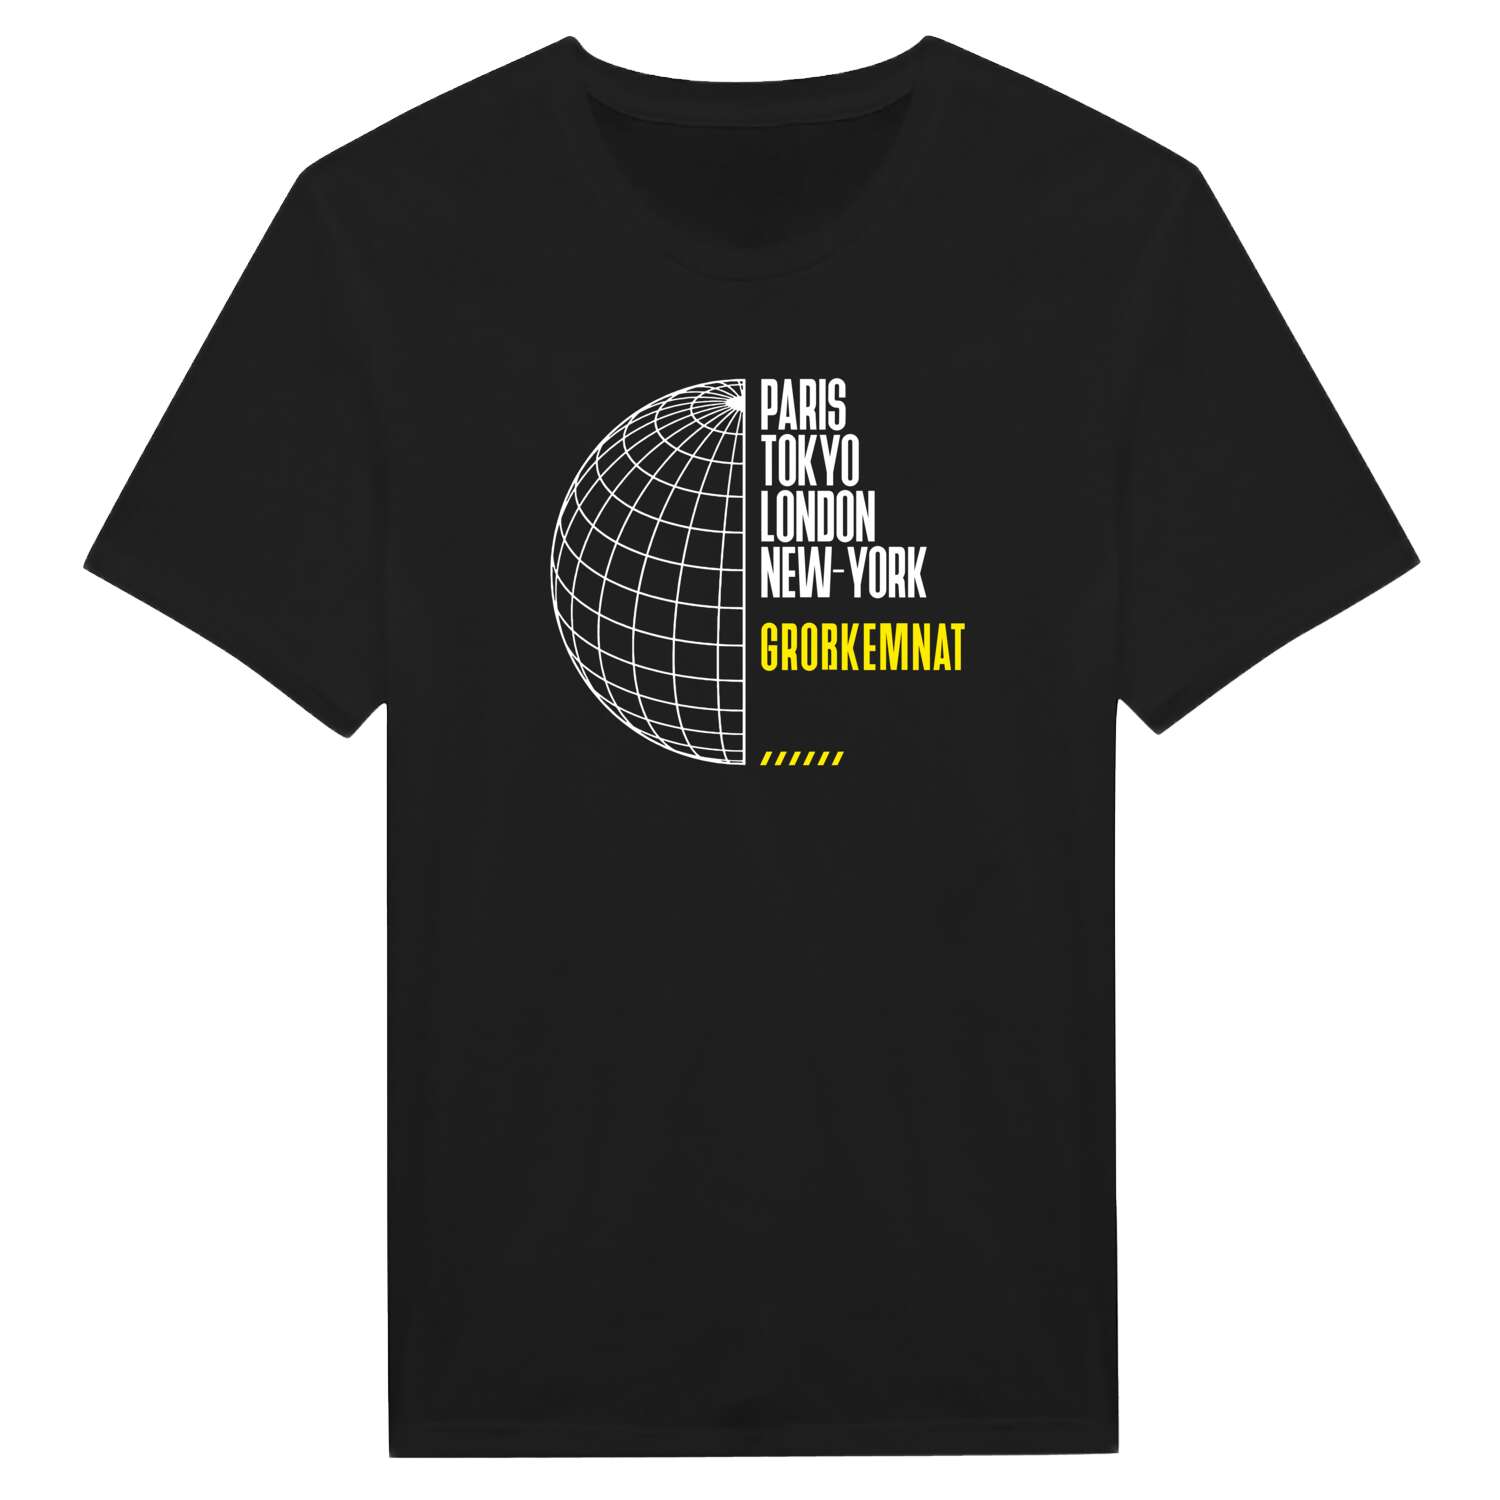 Großkemnat T-Shirt »Paris Tokyo London«